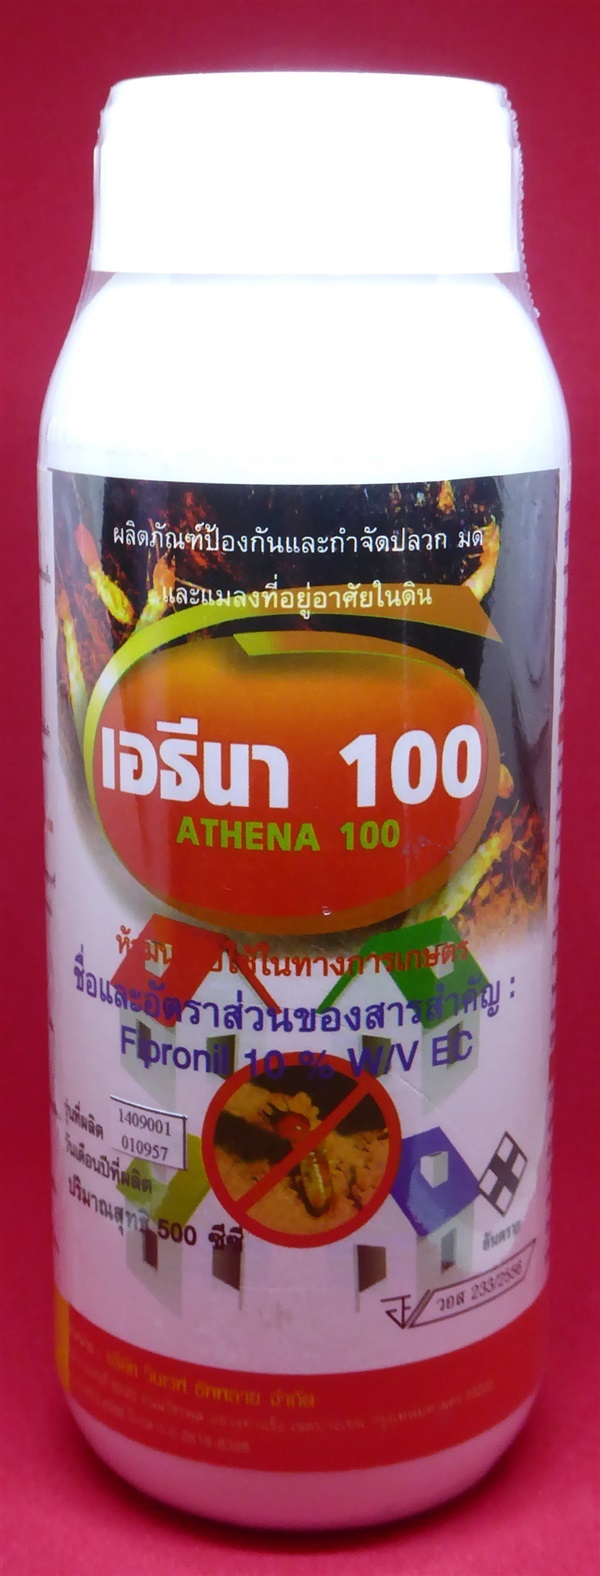 เอธีนา100 | ยาดีเกษตรภัณฑ์ - ลาดหลุมแก้ว ปทุมธานี